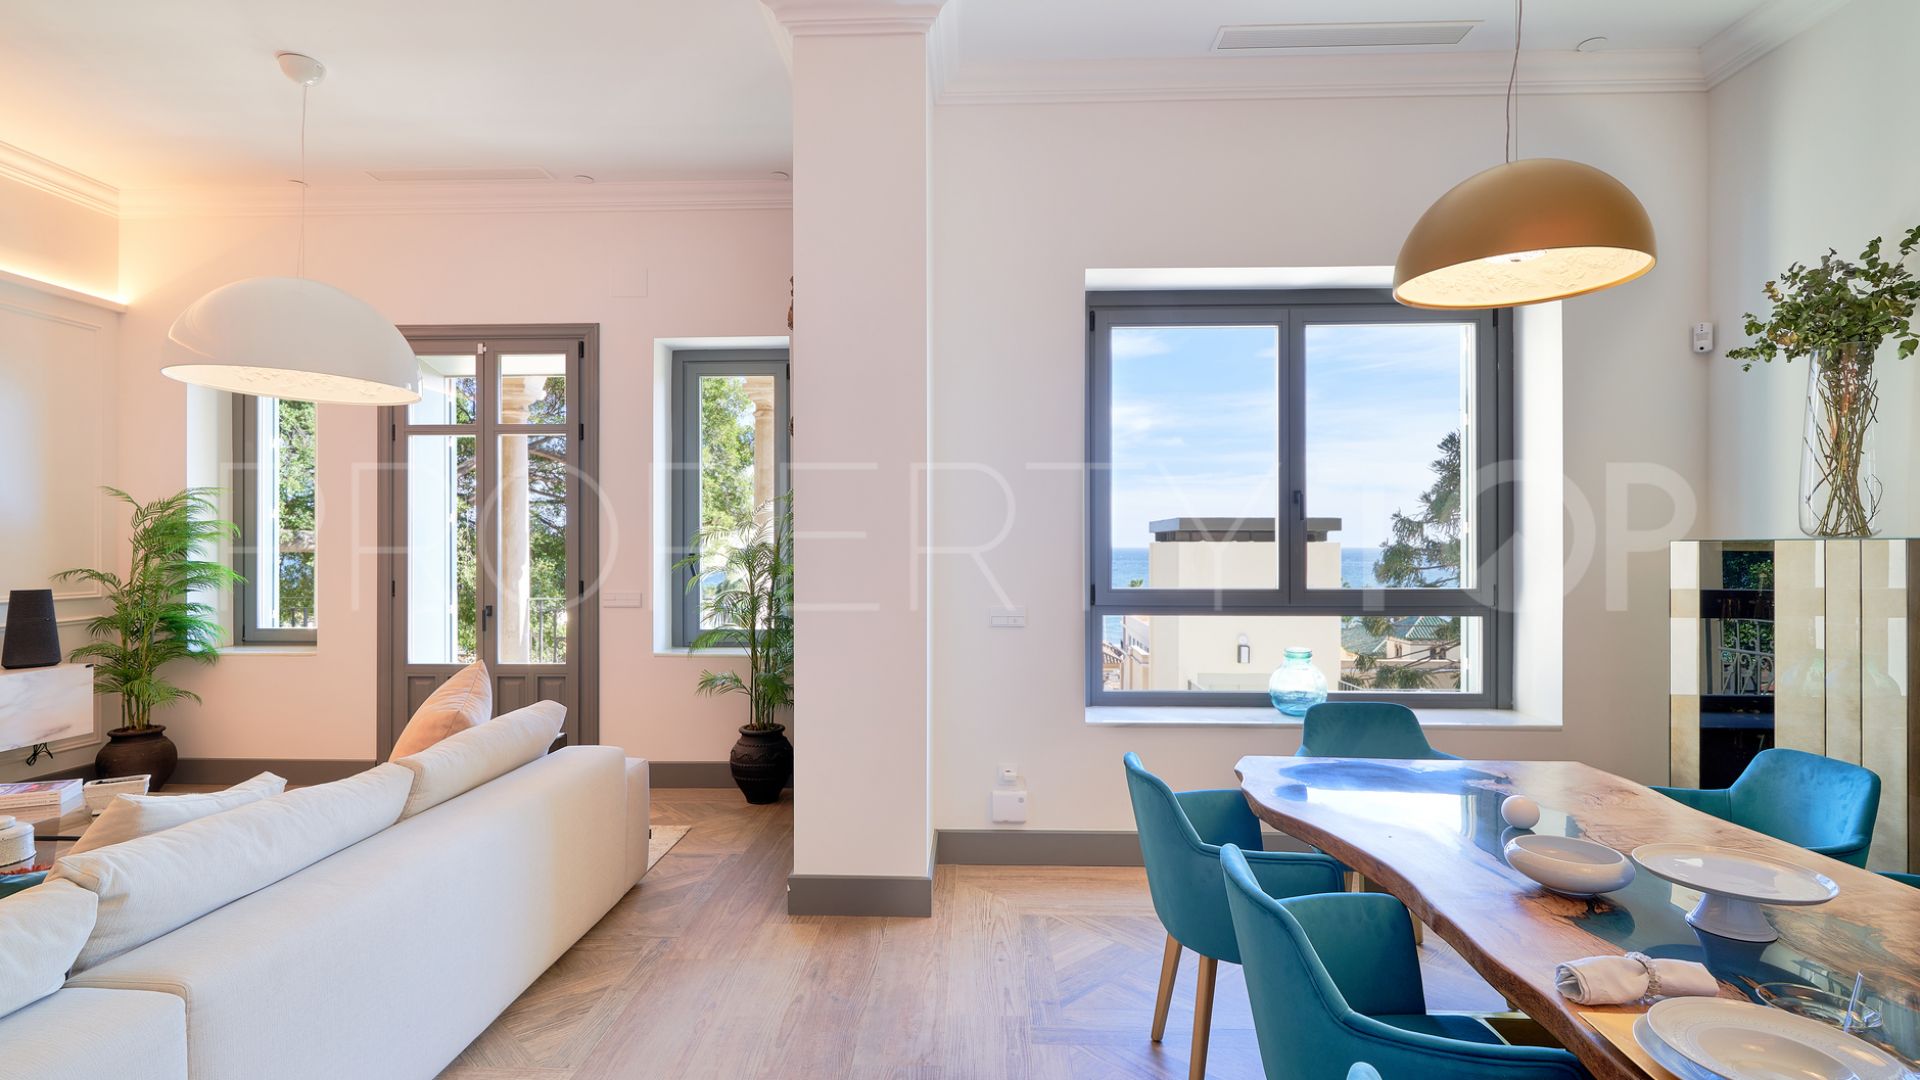 Buy 5 bedrooms ground floor duplex in Malaga